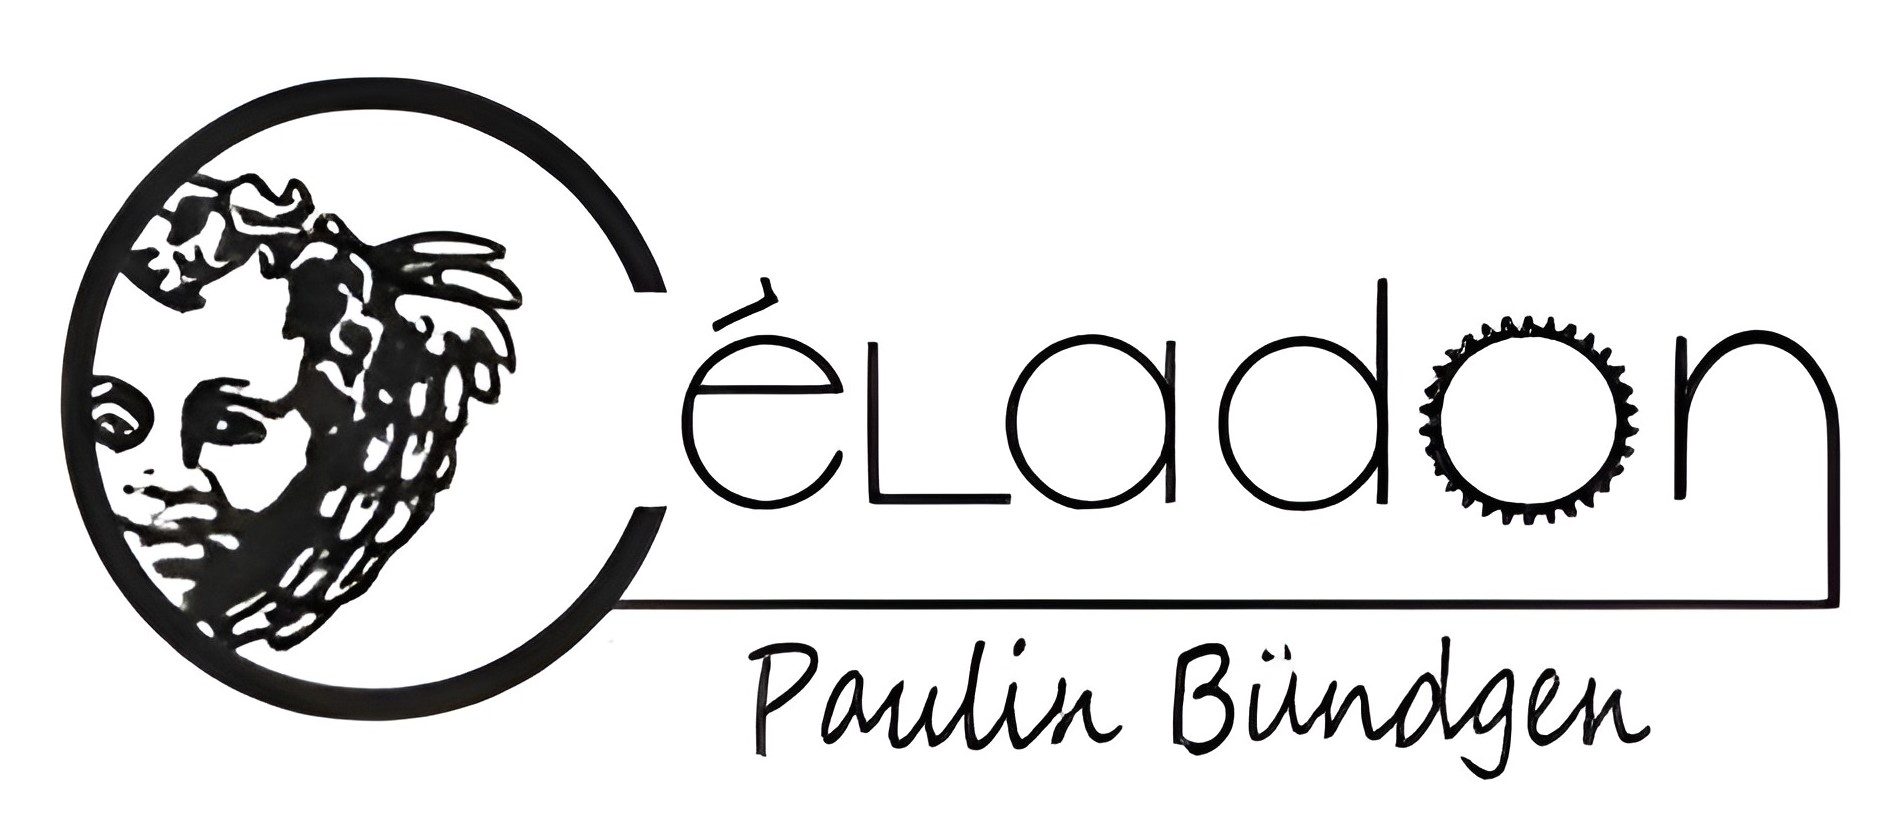 cropped-logo-celadon-paulin-bundgen-HD.jpg